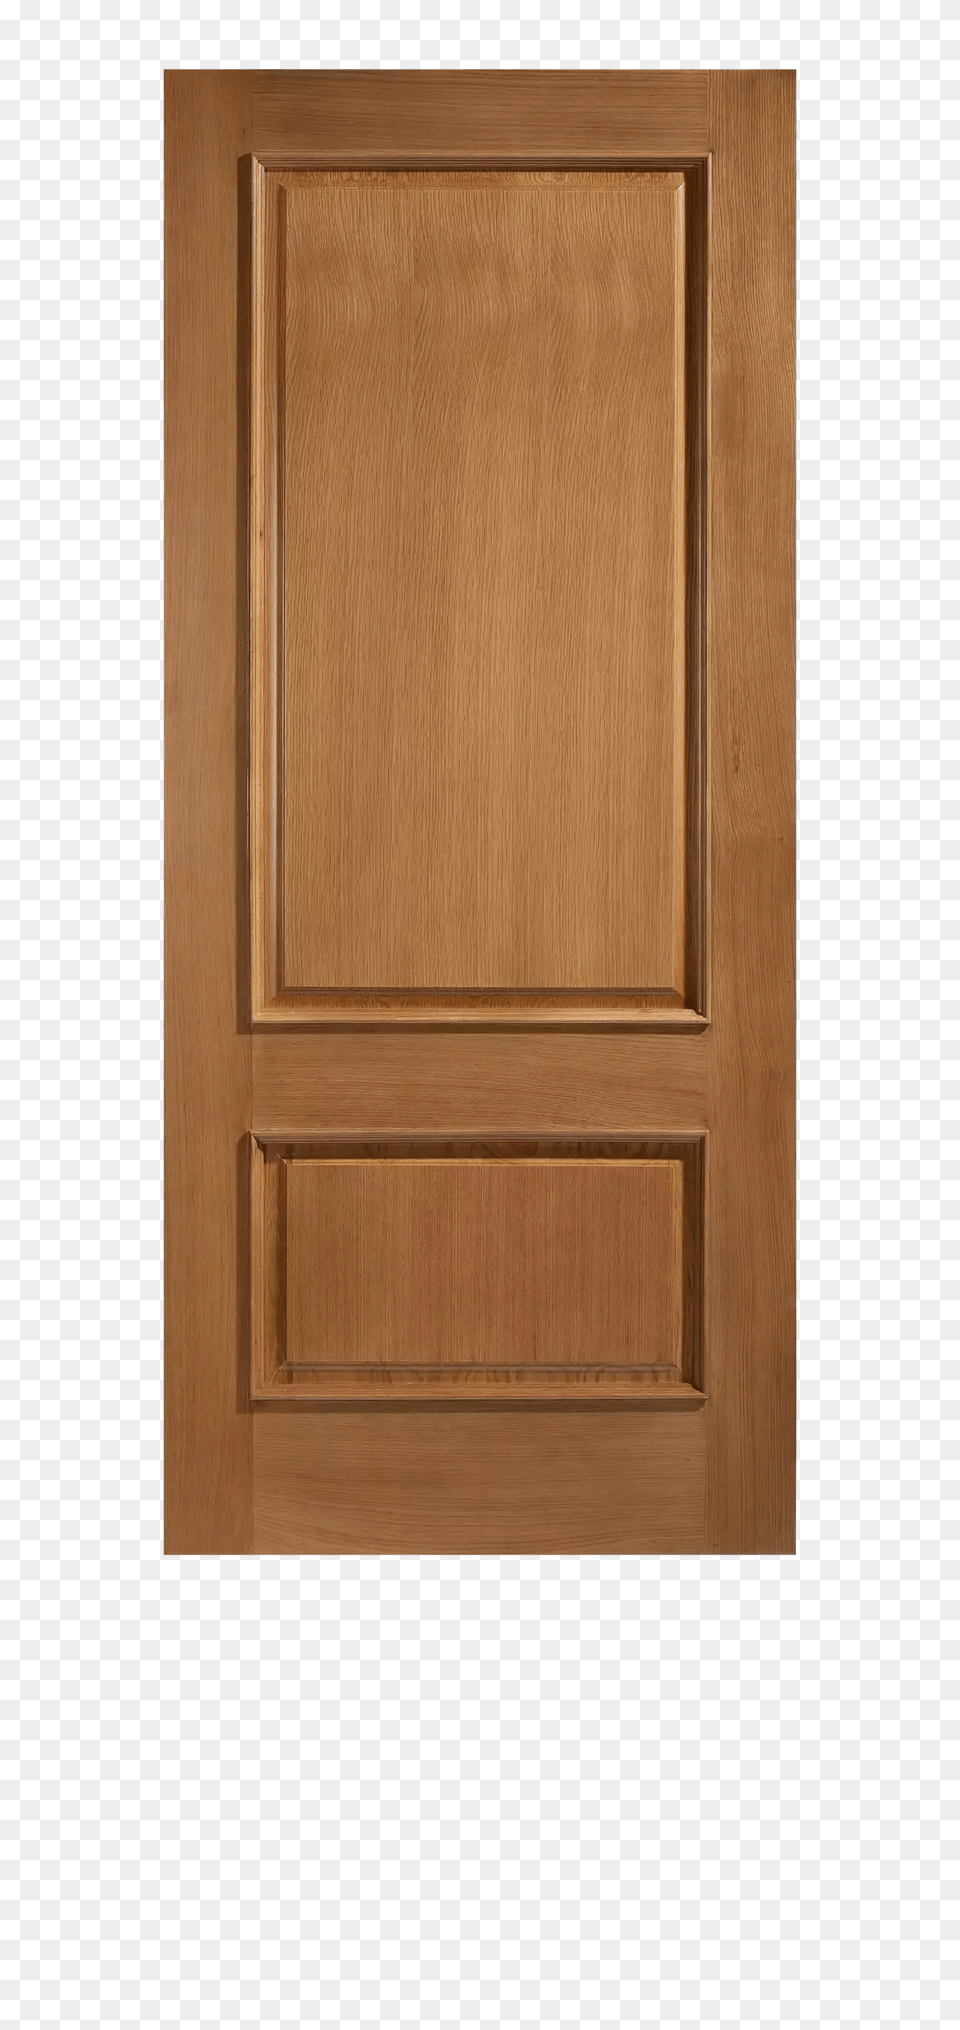 Door, Wood, Indoors, Interior Design Png Image